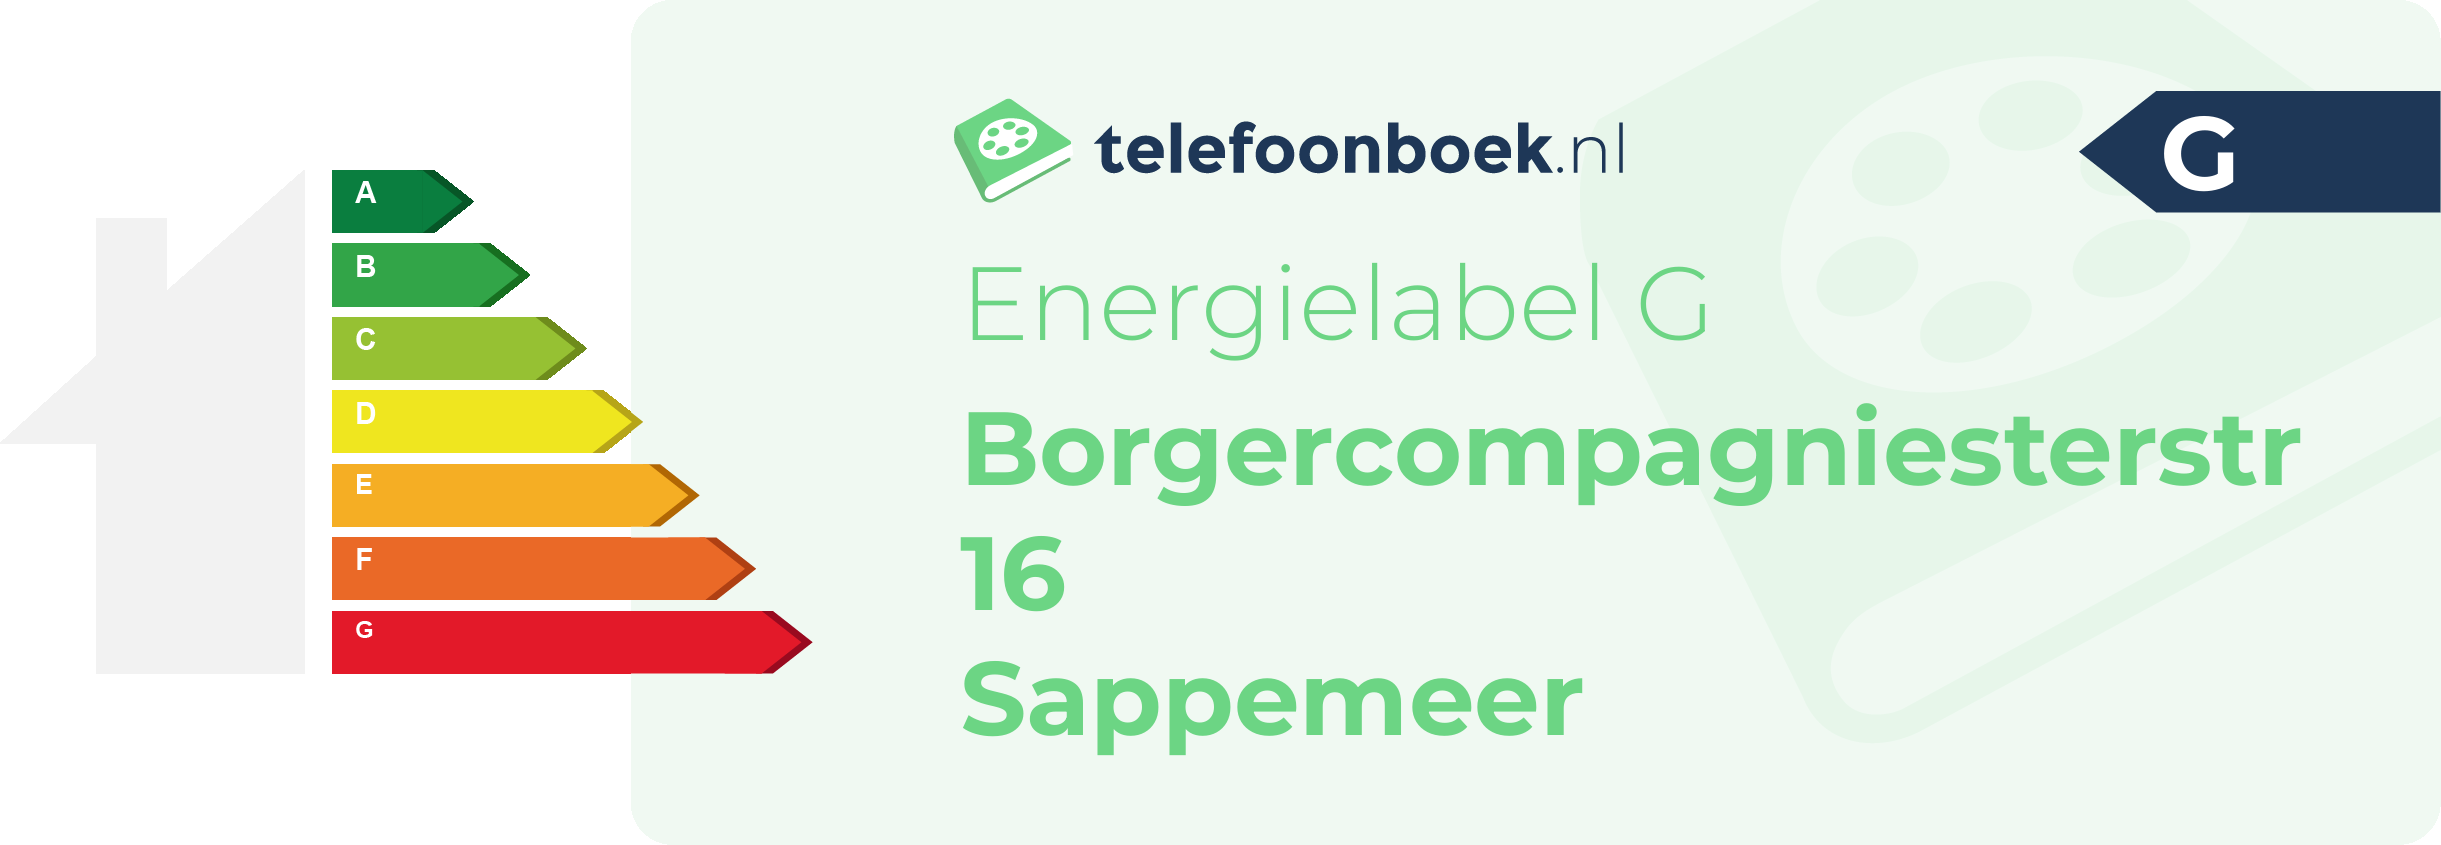 Energielabel Borgercompagniesterstr 16 Sappemeer